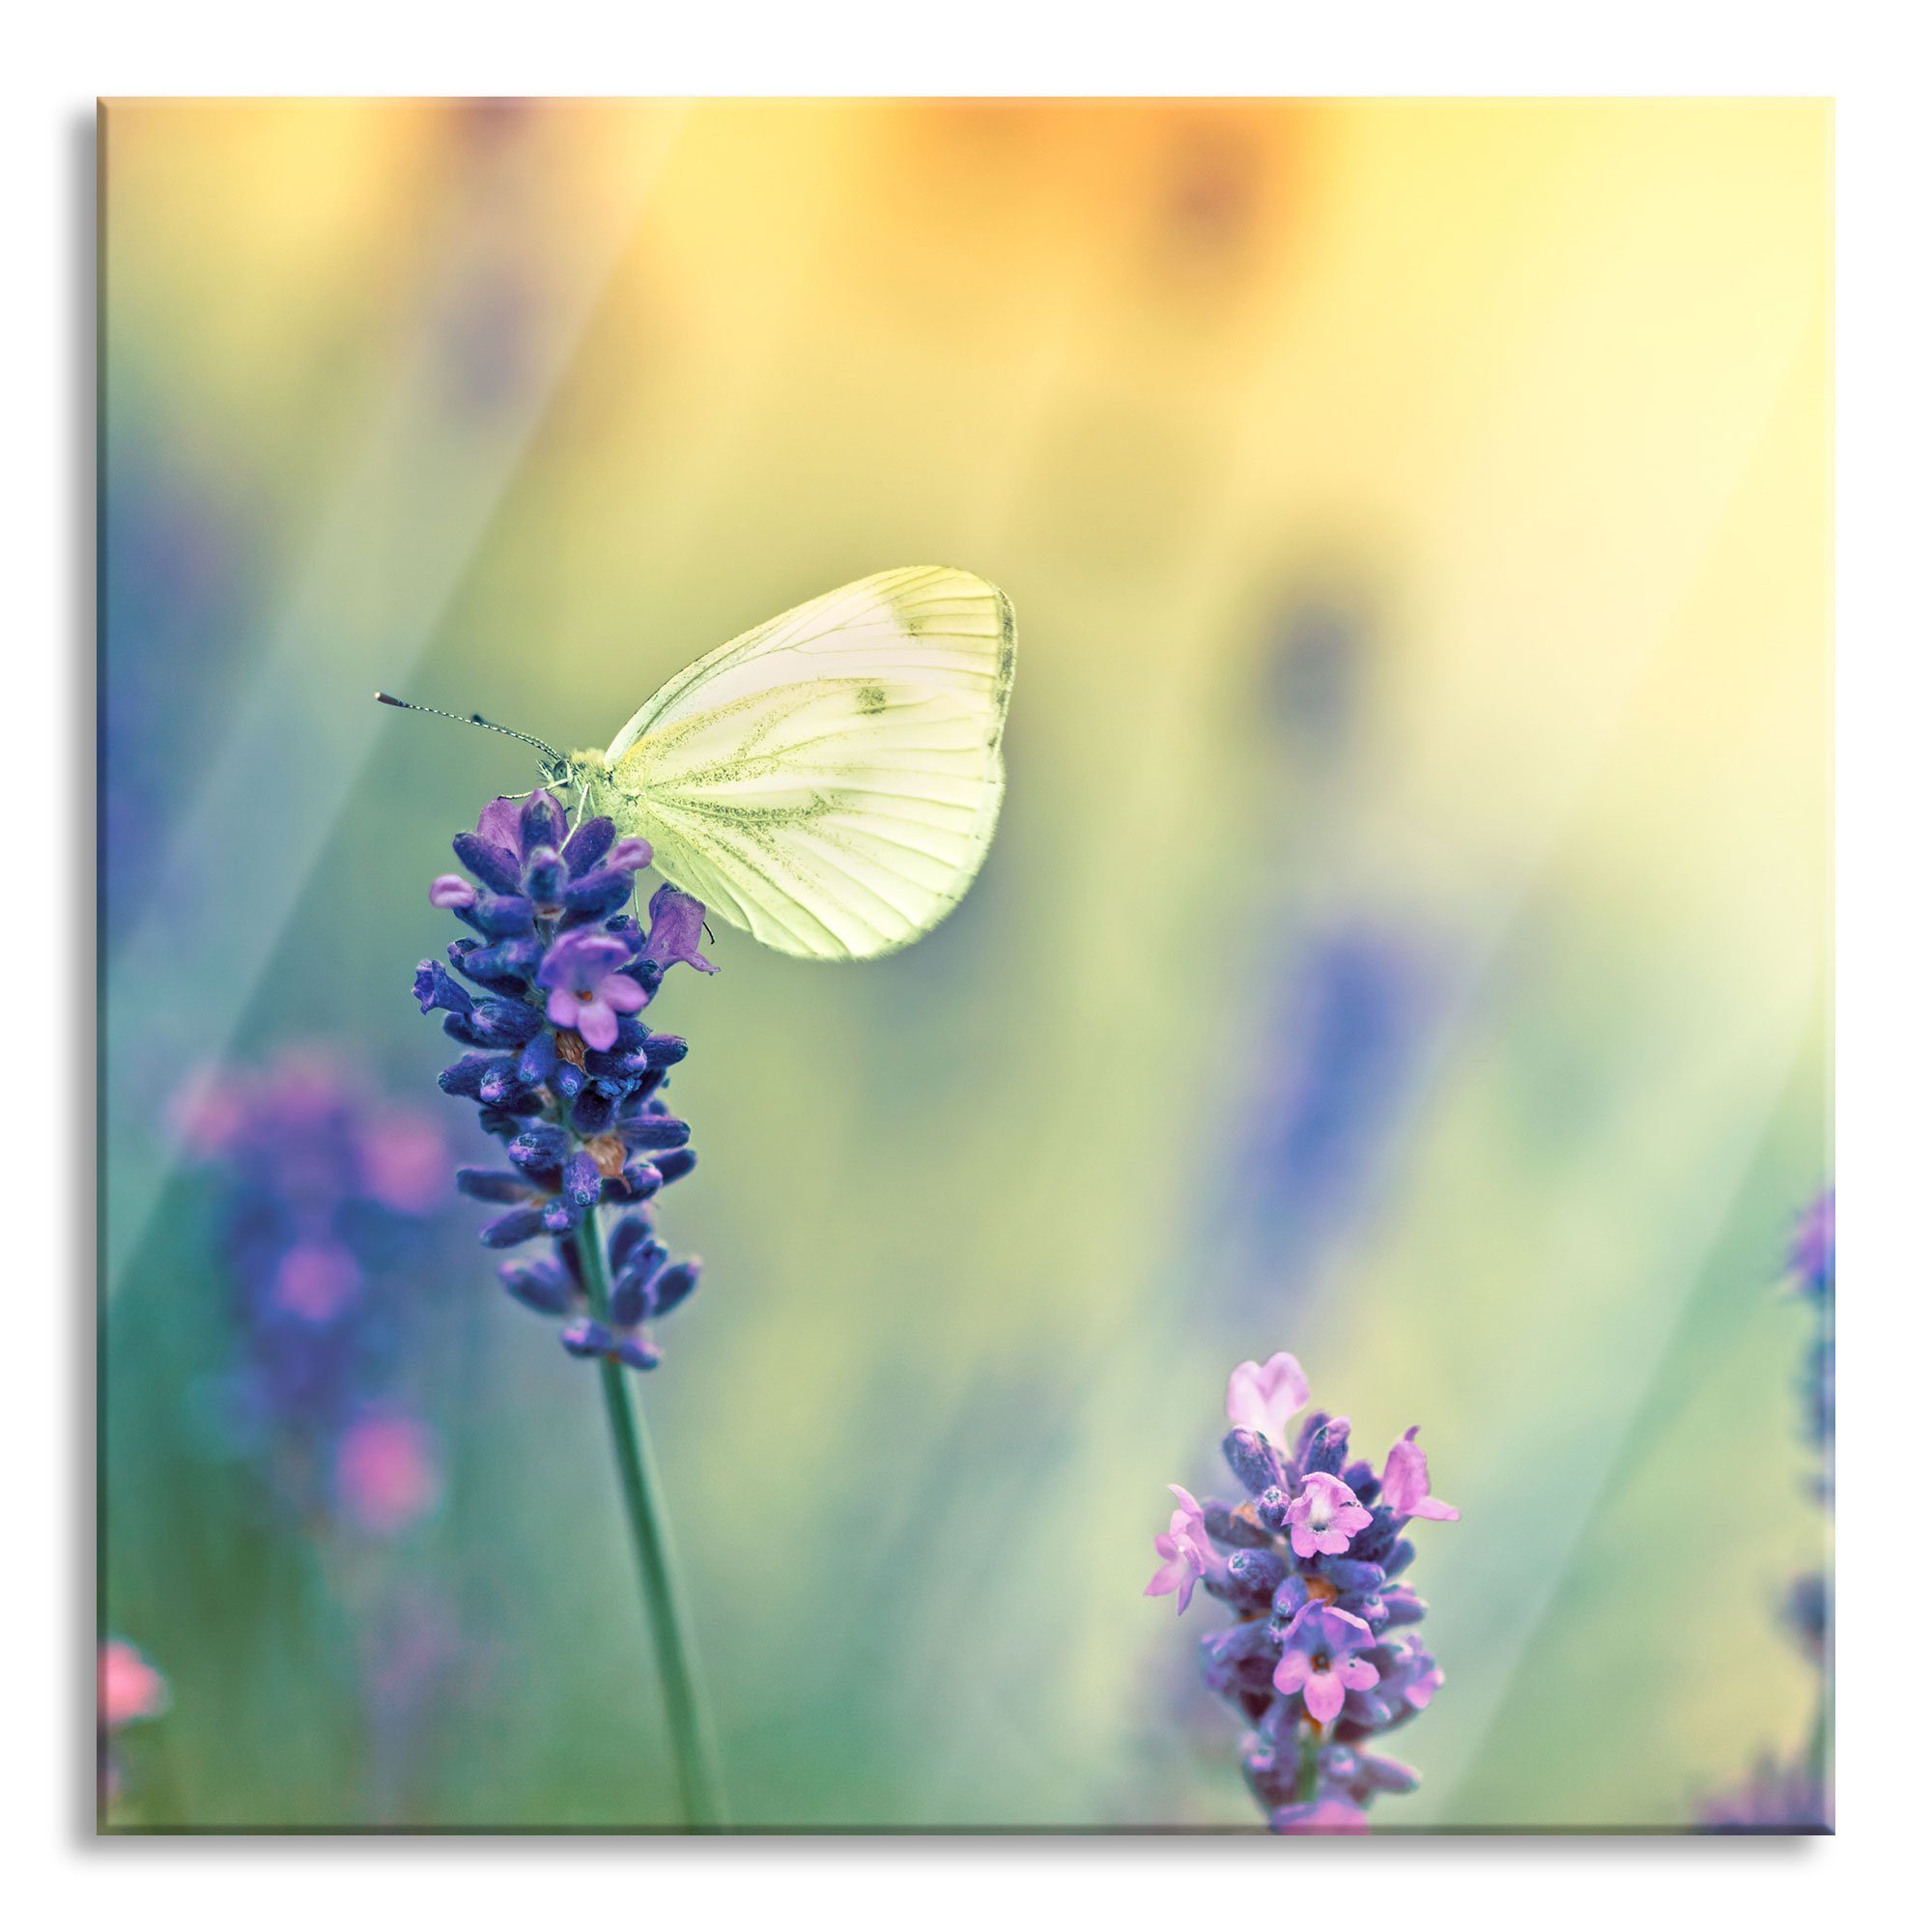 Pixxprint Glasbild Schmetterling auf Lavendel, Schmetterling auf Lavendel (1 St), Glasbild aus Echtglas, inkl. Aufhängungen und Abstandshalter